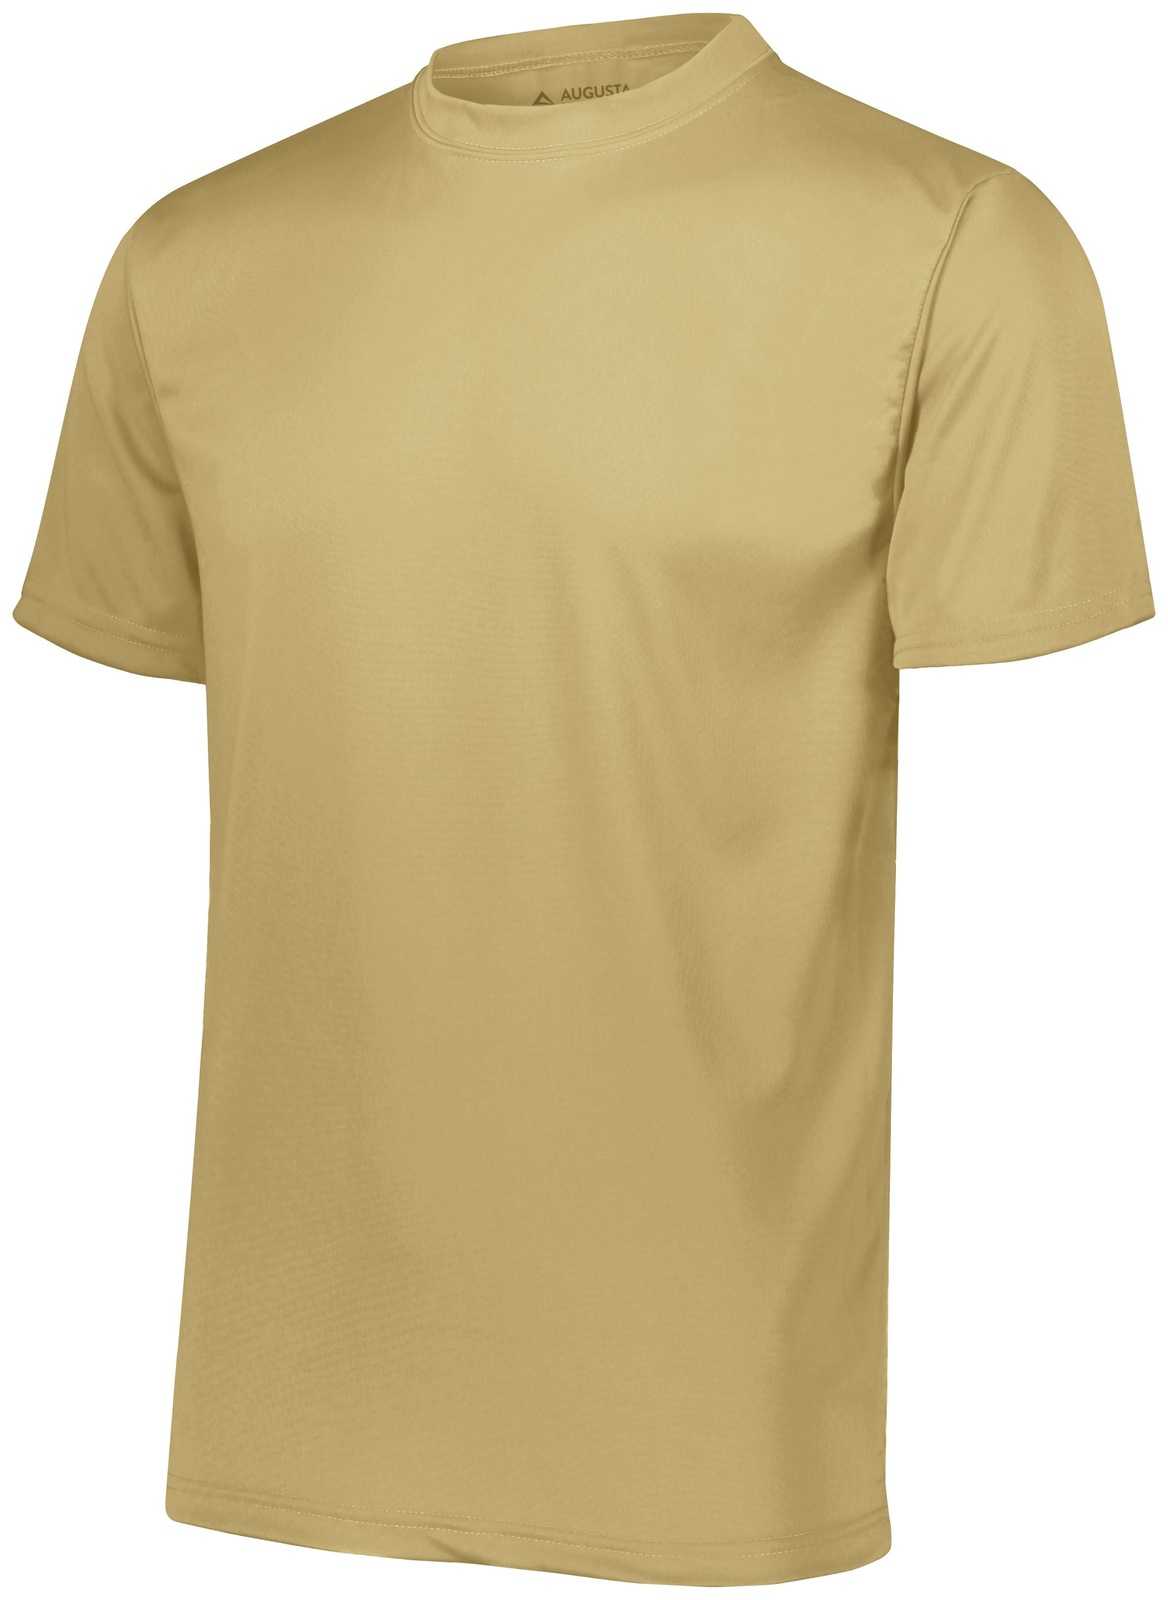 Augusta 790 NexGen Wicking T-Shirt - Vegas Gold - HIT a Double